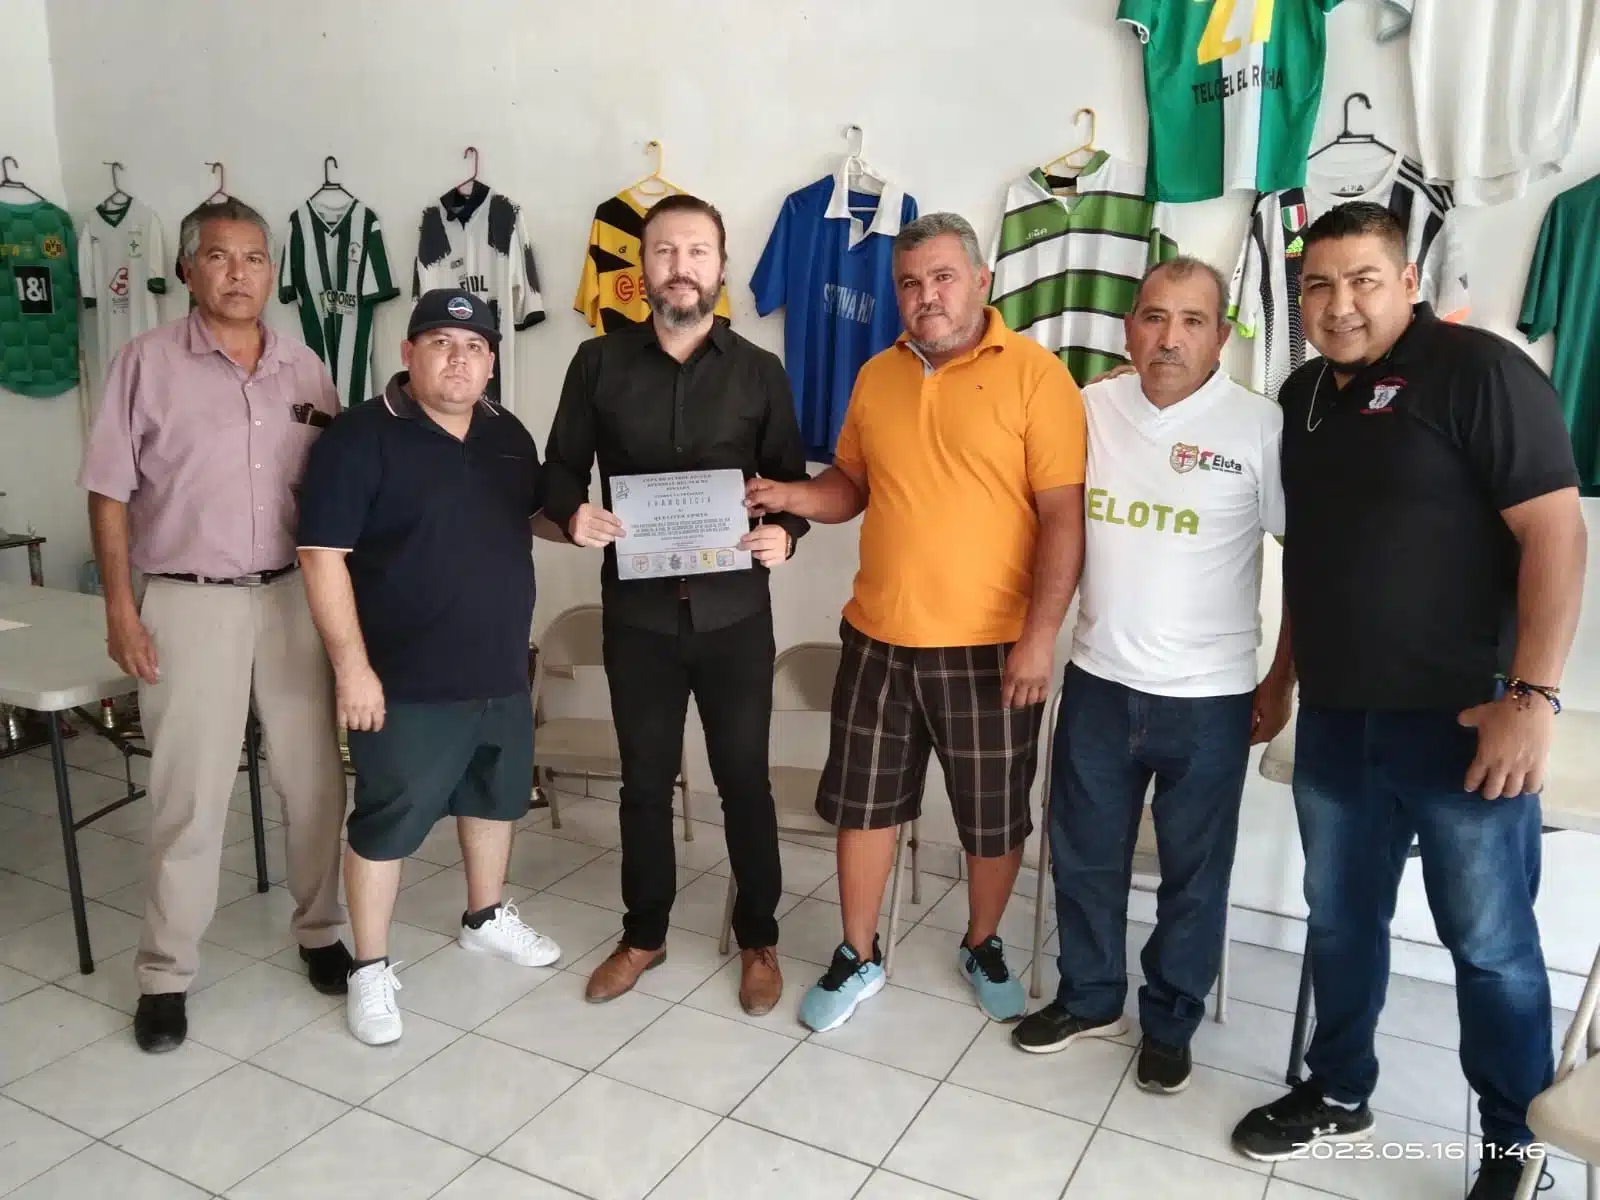 Continúan los trabajos para la primera edición de la Copa Regional de Fútbol Soccer